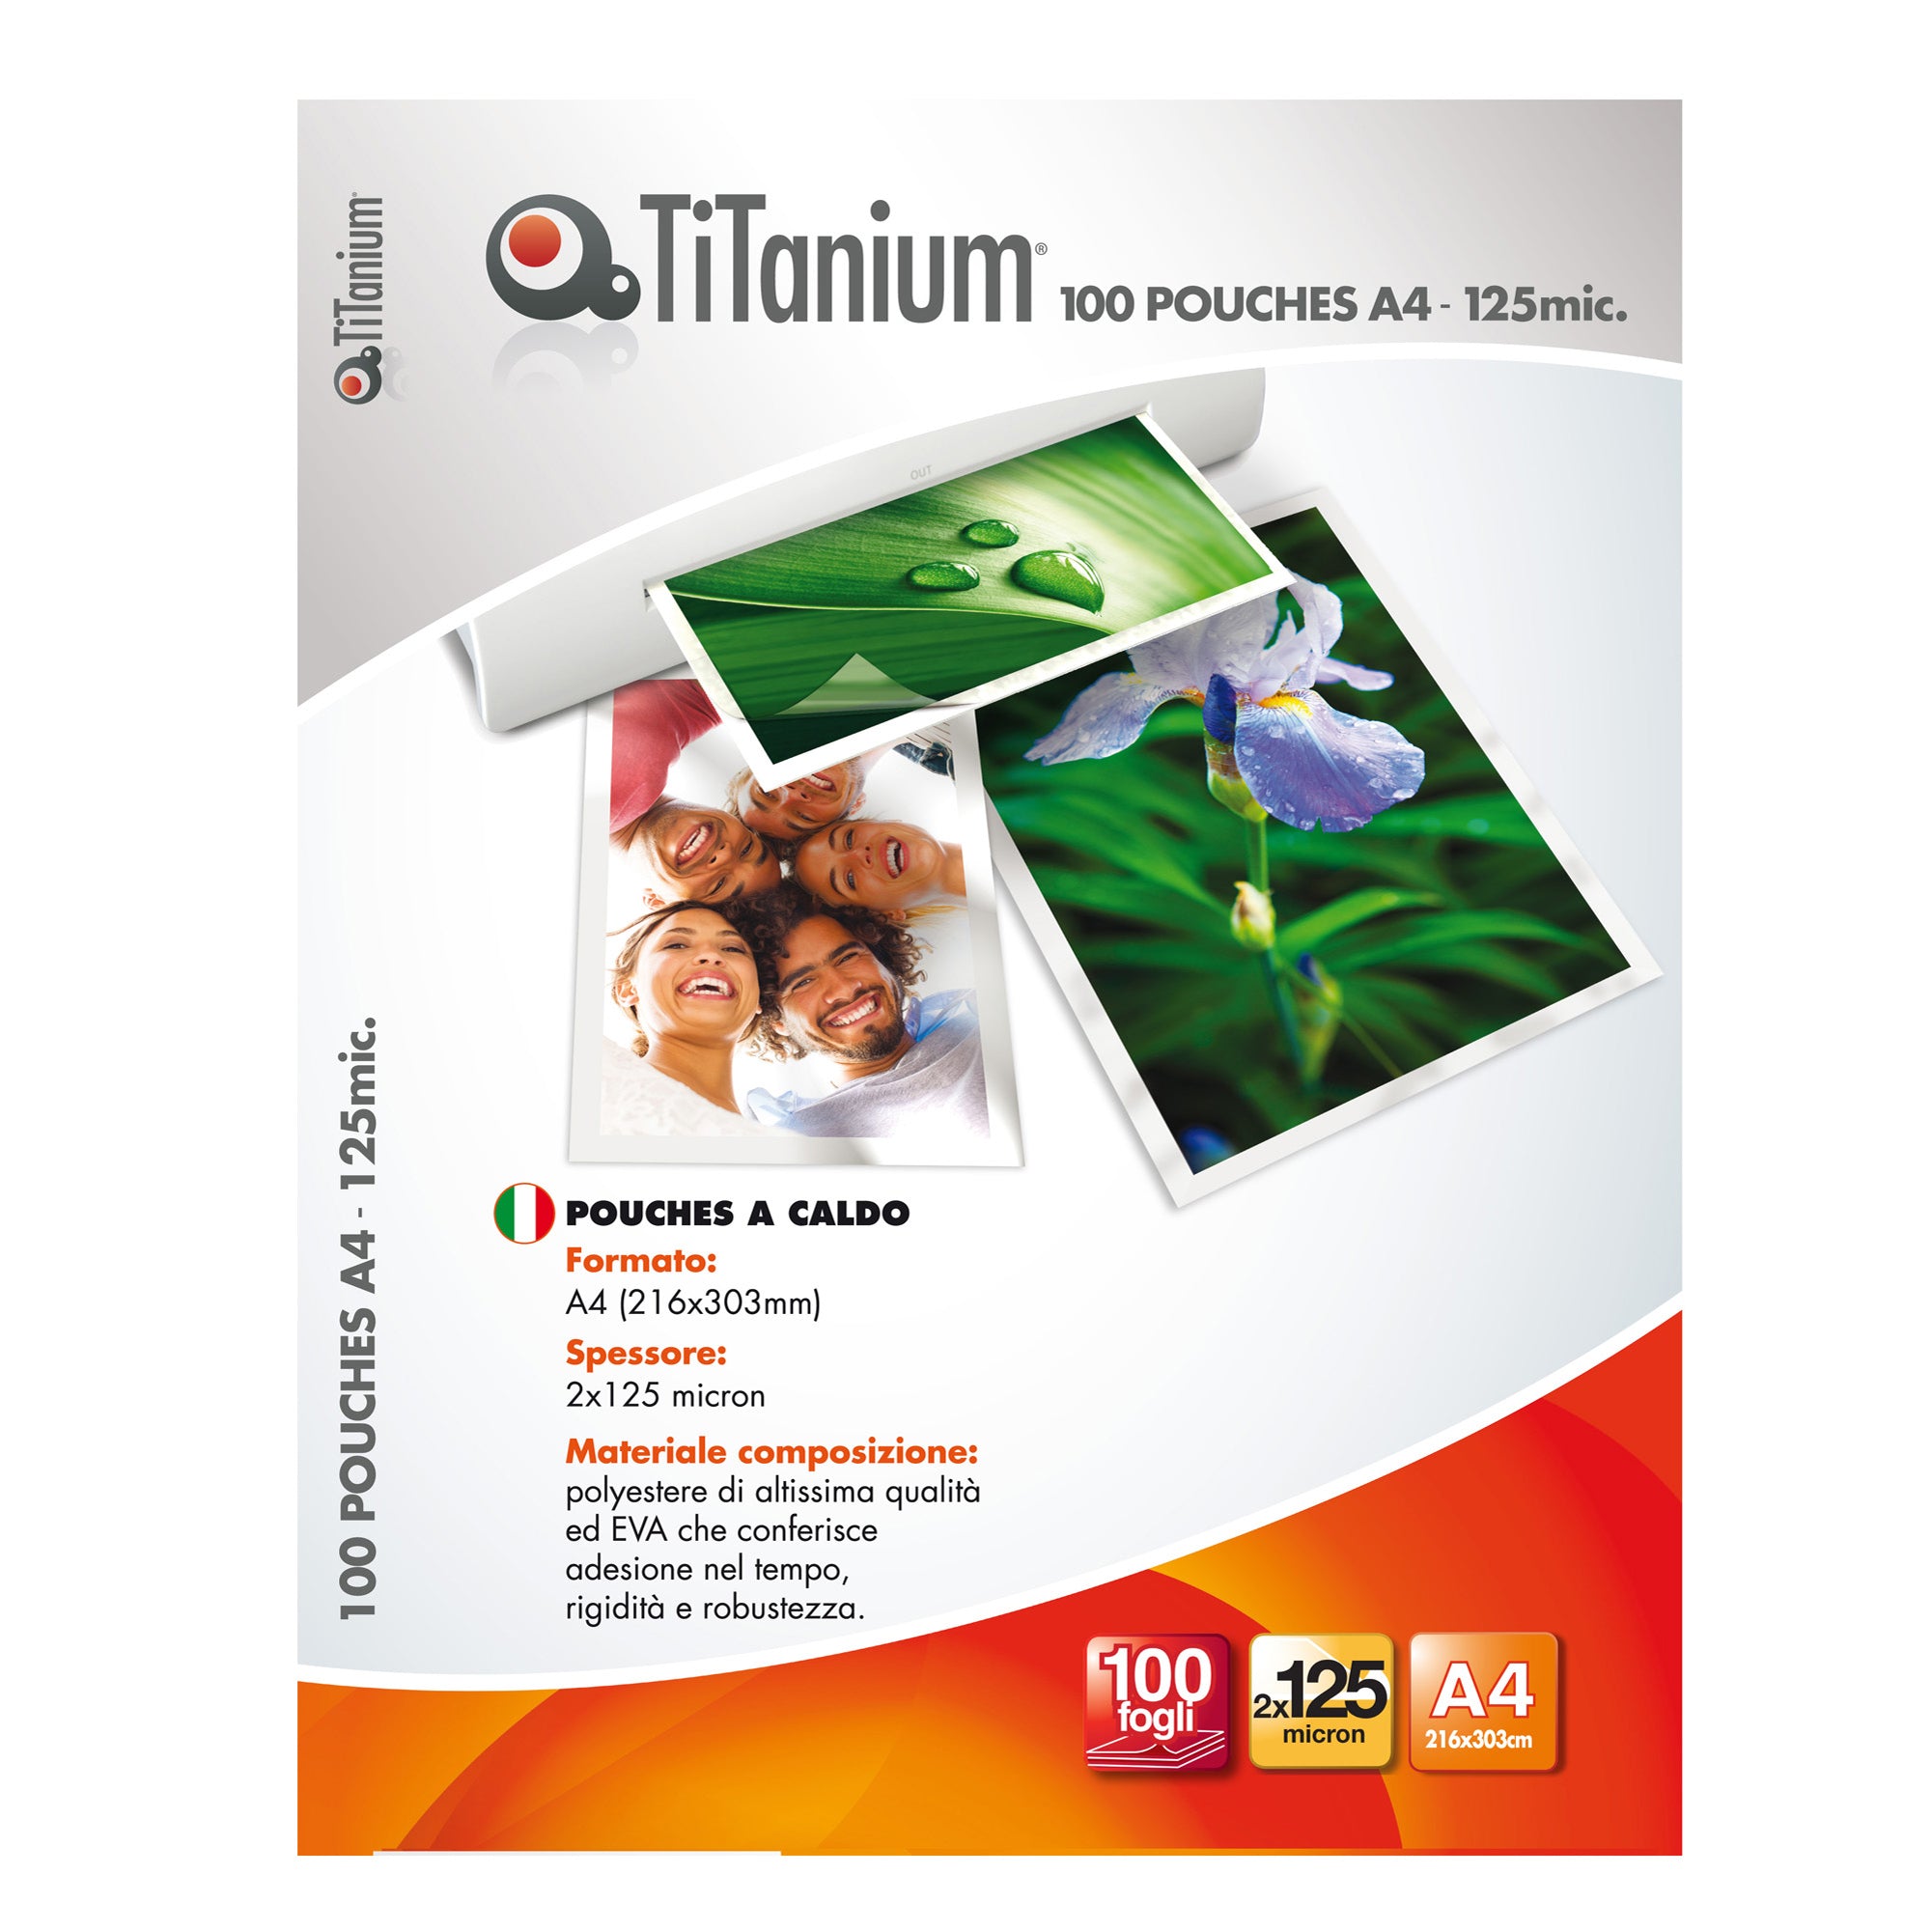 titanium-100-pouches-216x303mm-a4-125my